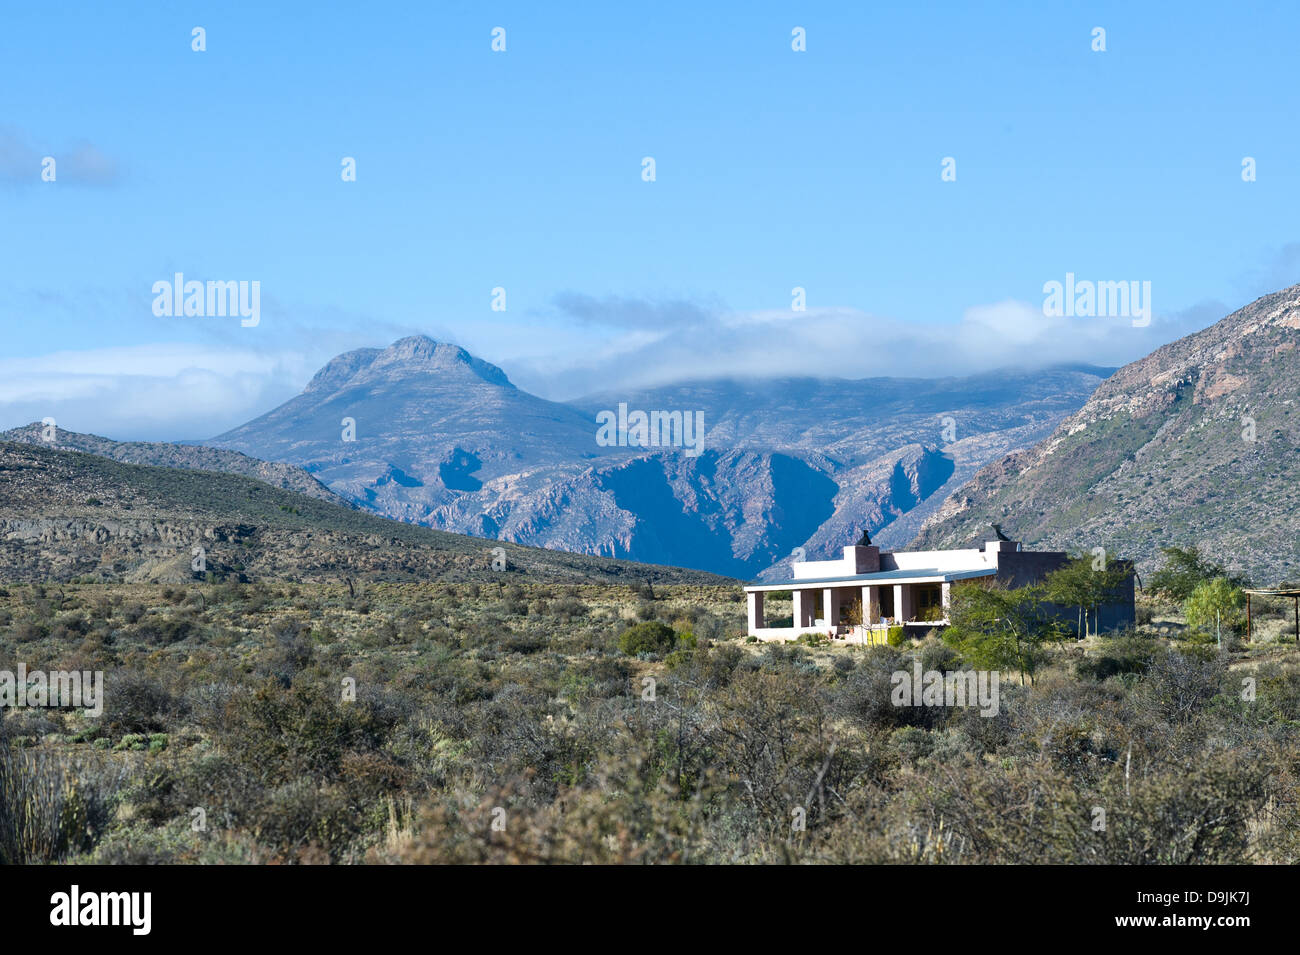 Karoo vegetazione, le montagne e la casa, Prince Albert, Western Cape, Sud Africa Foto Stock